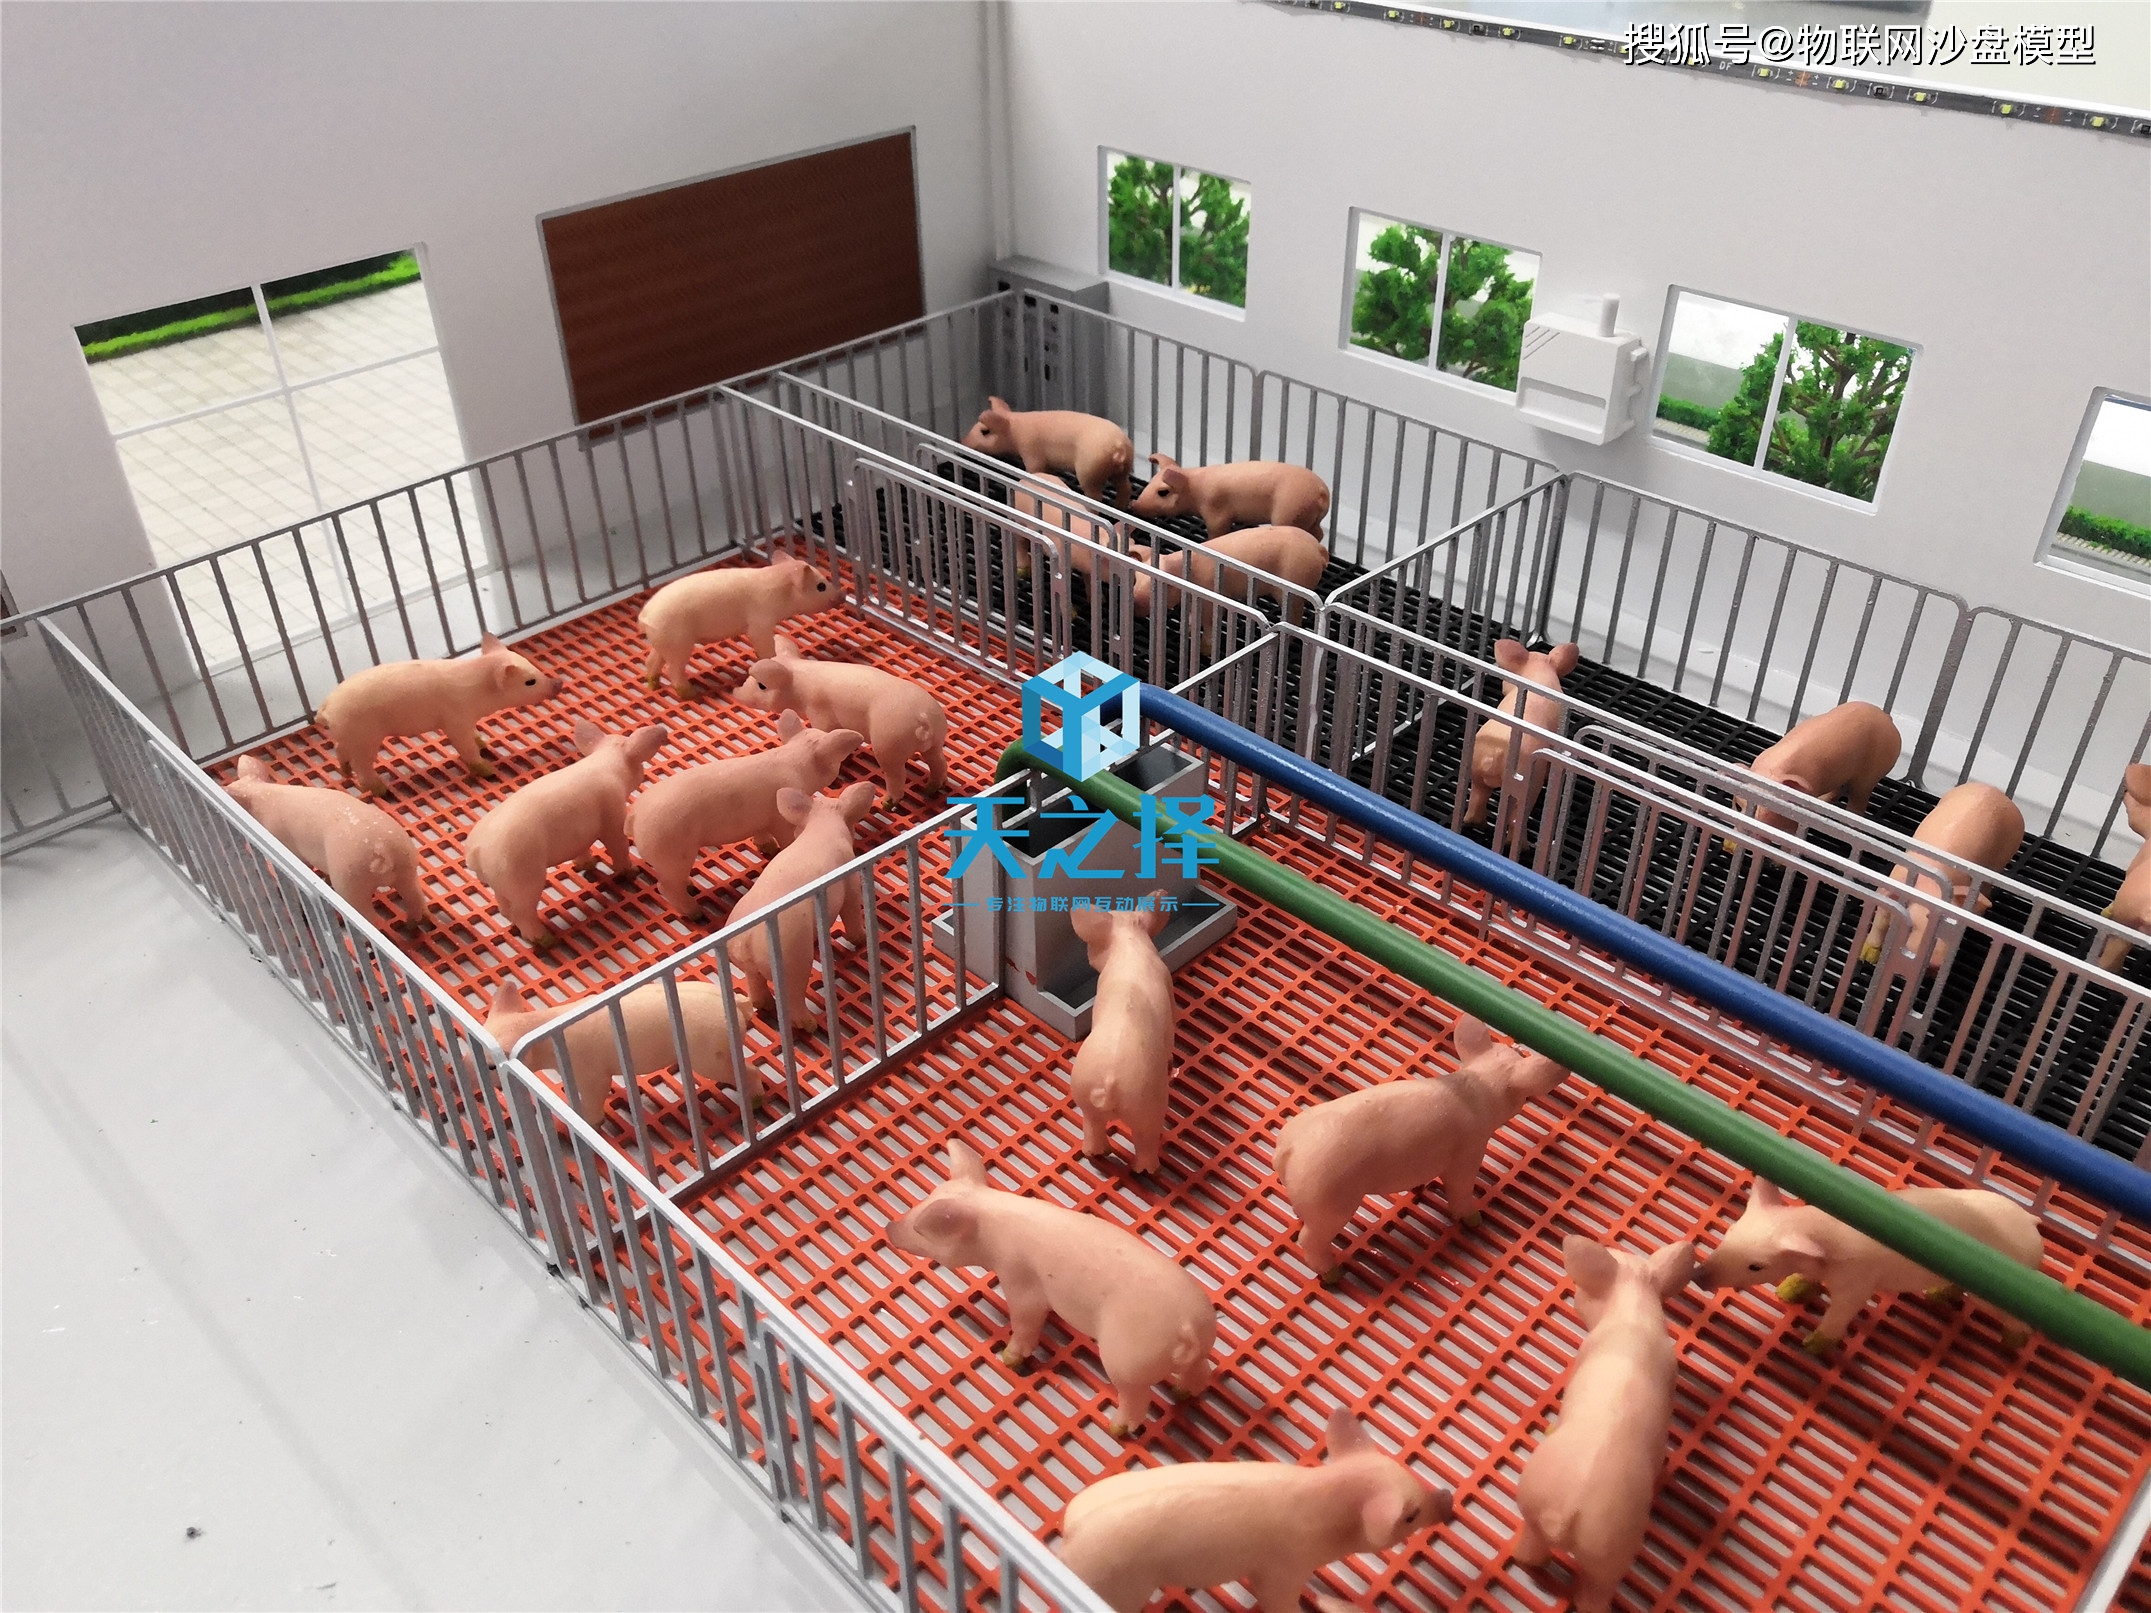 智慧养猪场系统沙盘模型数据采集和监控